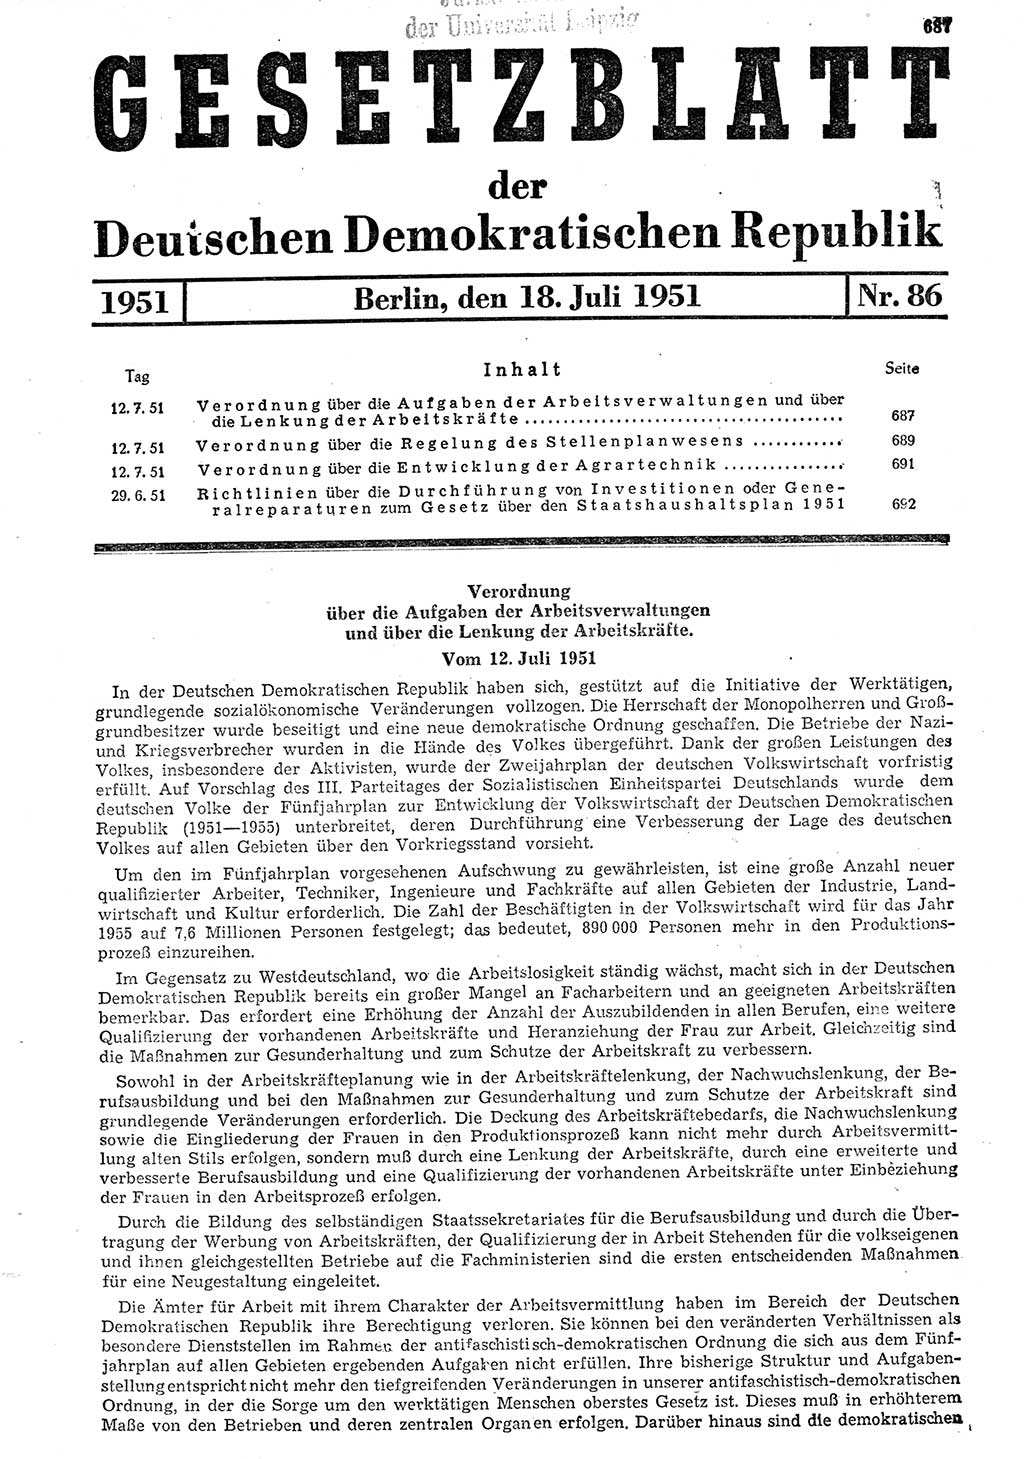 Gesetzblatt (GBl.) der Deutschen Demokratischen Republik (DDR) 1951, Seite 687 (GBl. DDR 1951, S. 687)